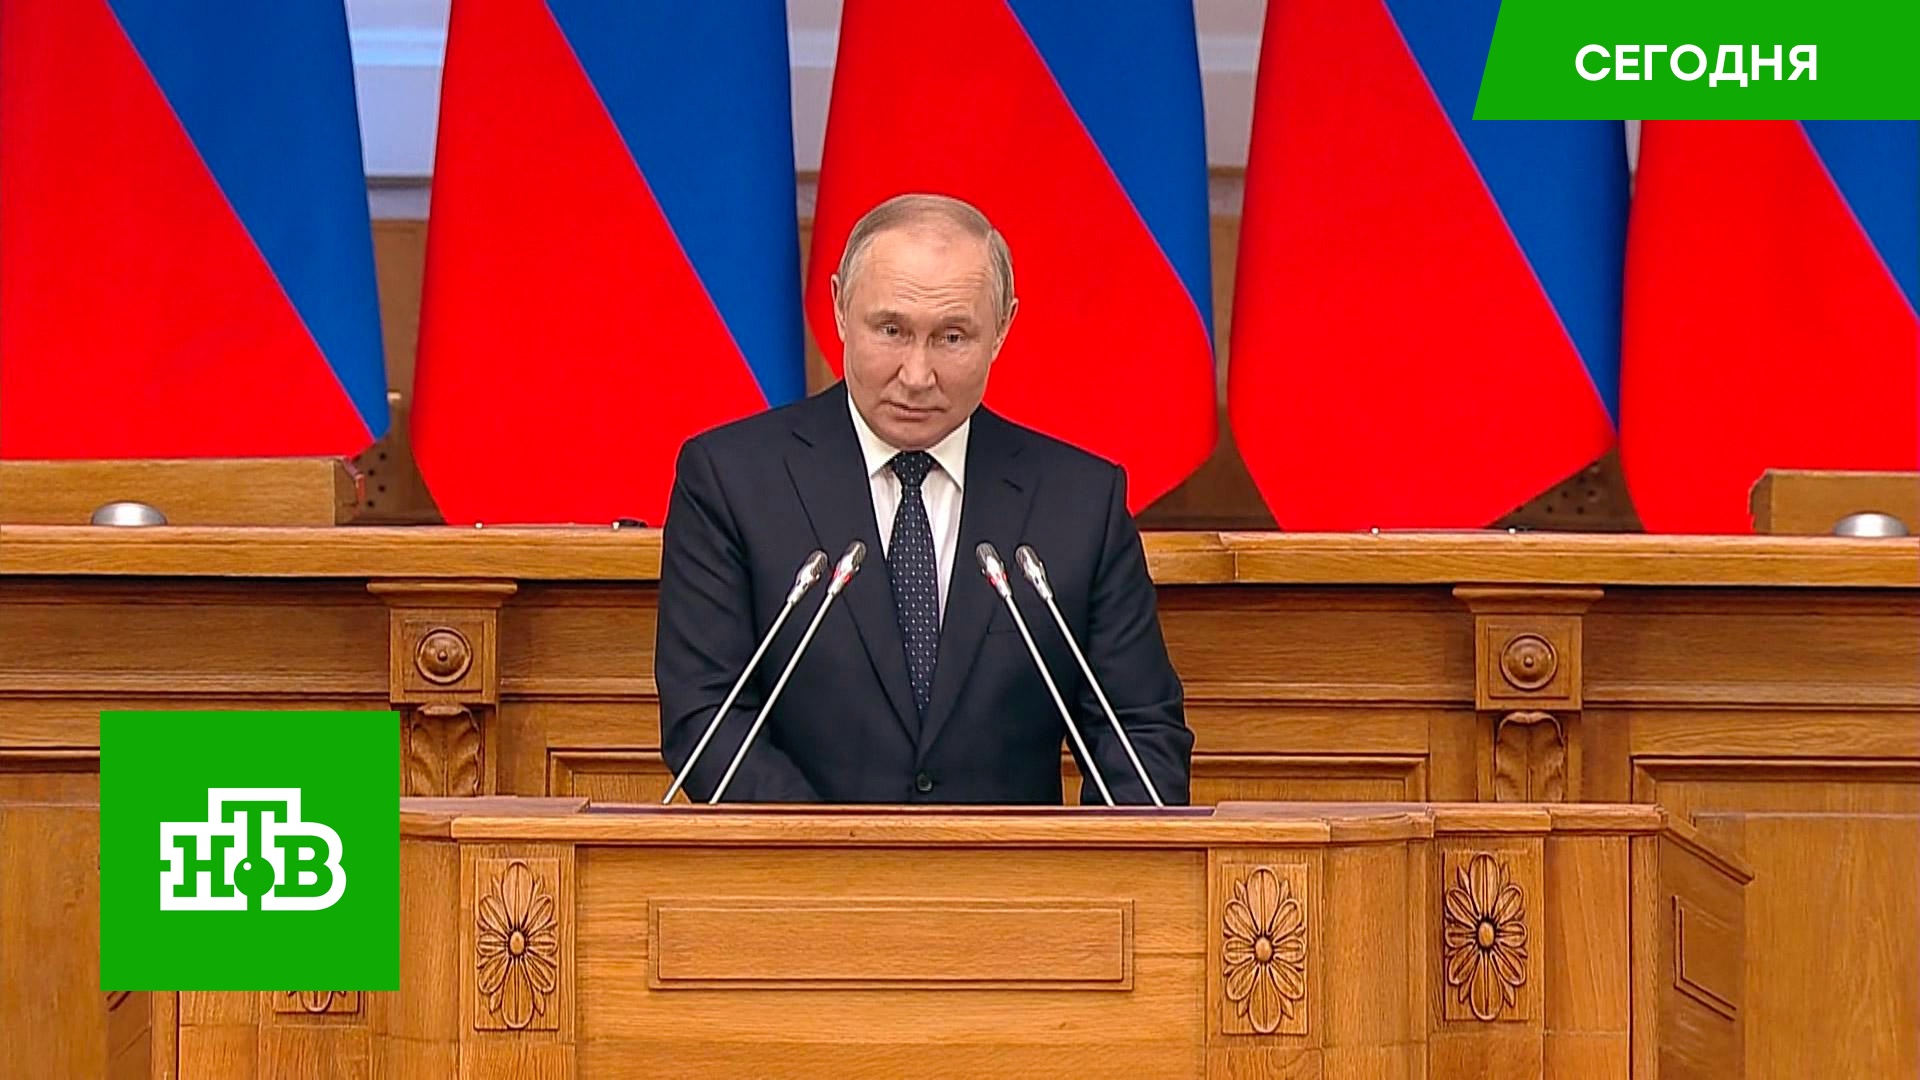 Спецоперация, санкции и индексация пенсий: о чем Путин говорил на Совете законодателей